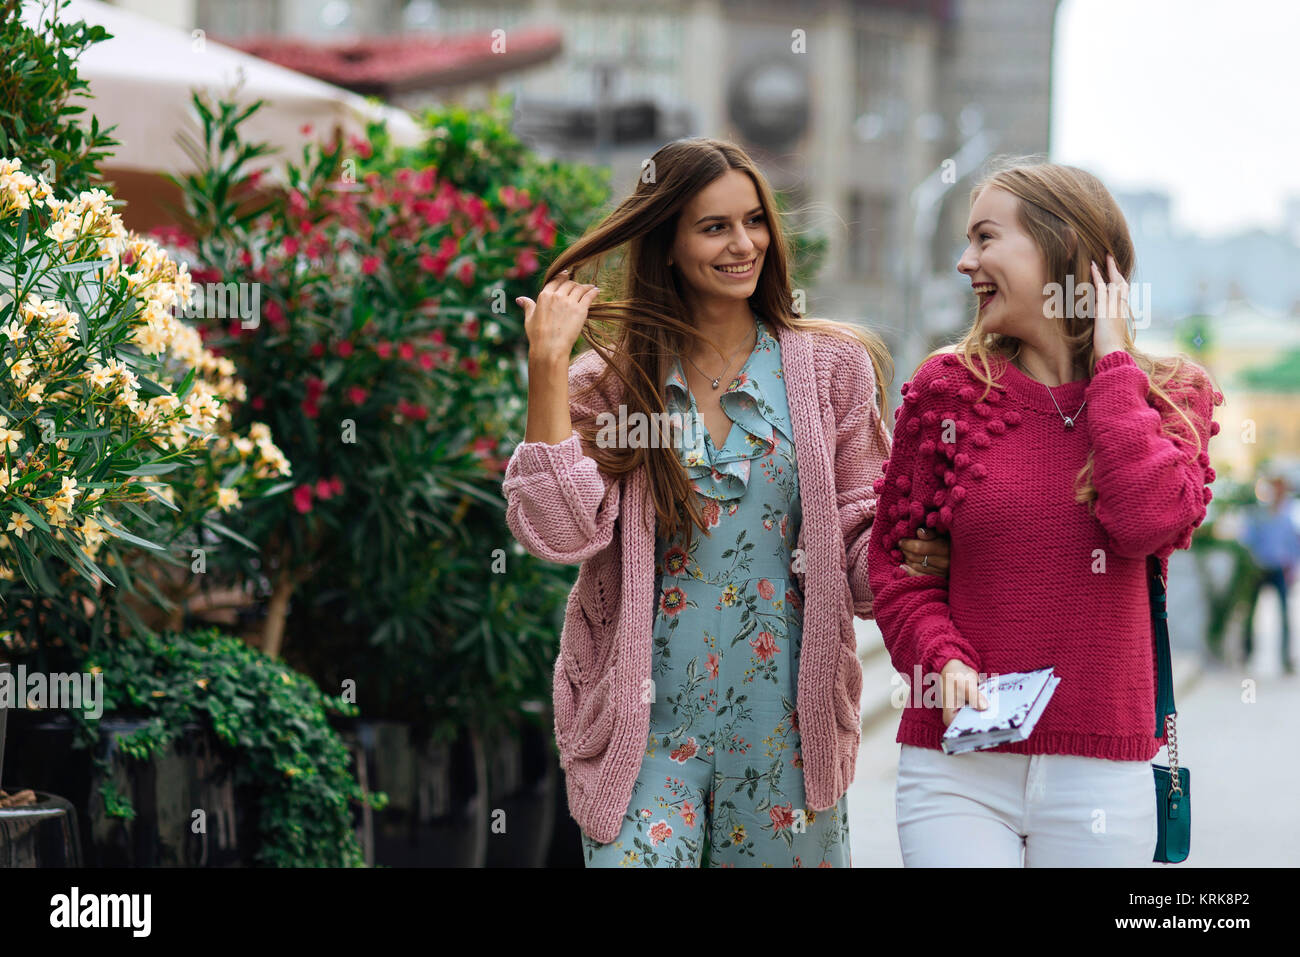 Smiling Caucasian women walking avec les mains dans les cheveux Banque D'Images